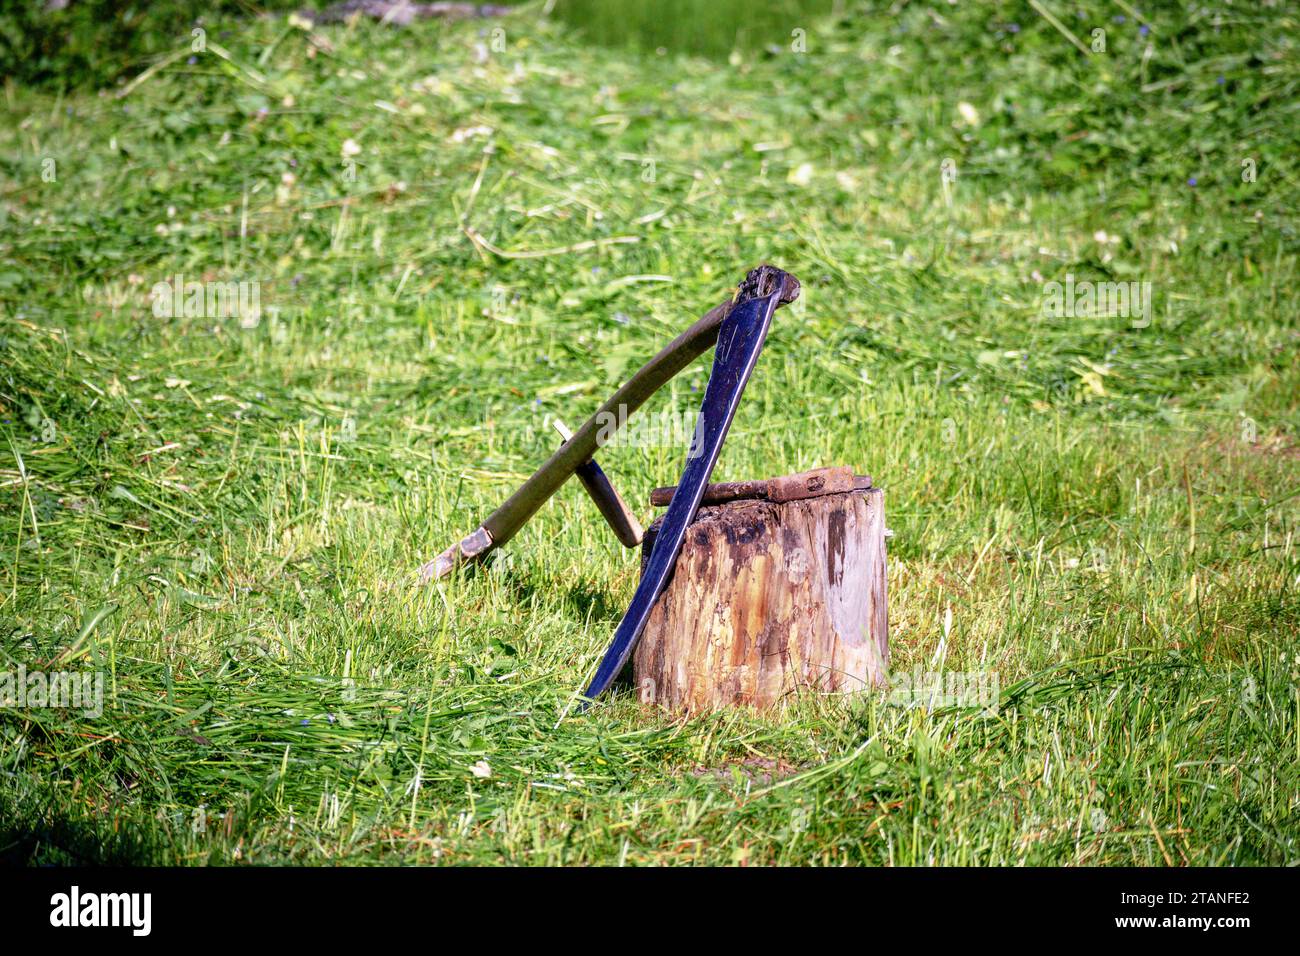 Eine Sense, die sich gegen einen Baumstamm lehnt, mit geschnittenem grünem Gras im Hintergrund Stockfoto